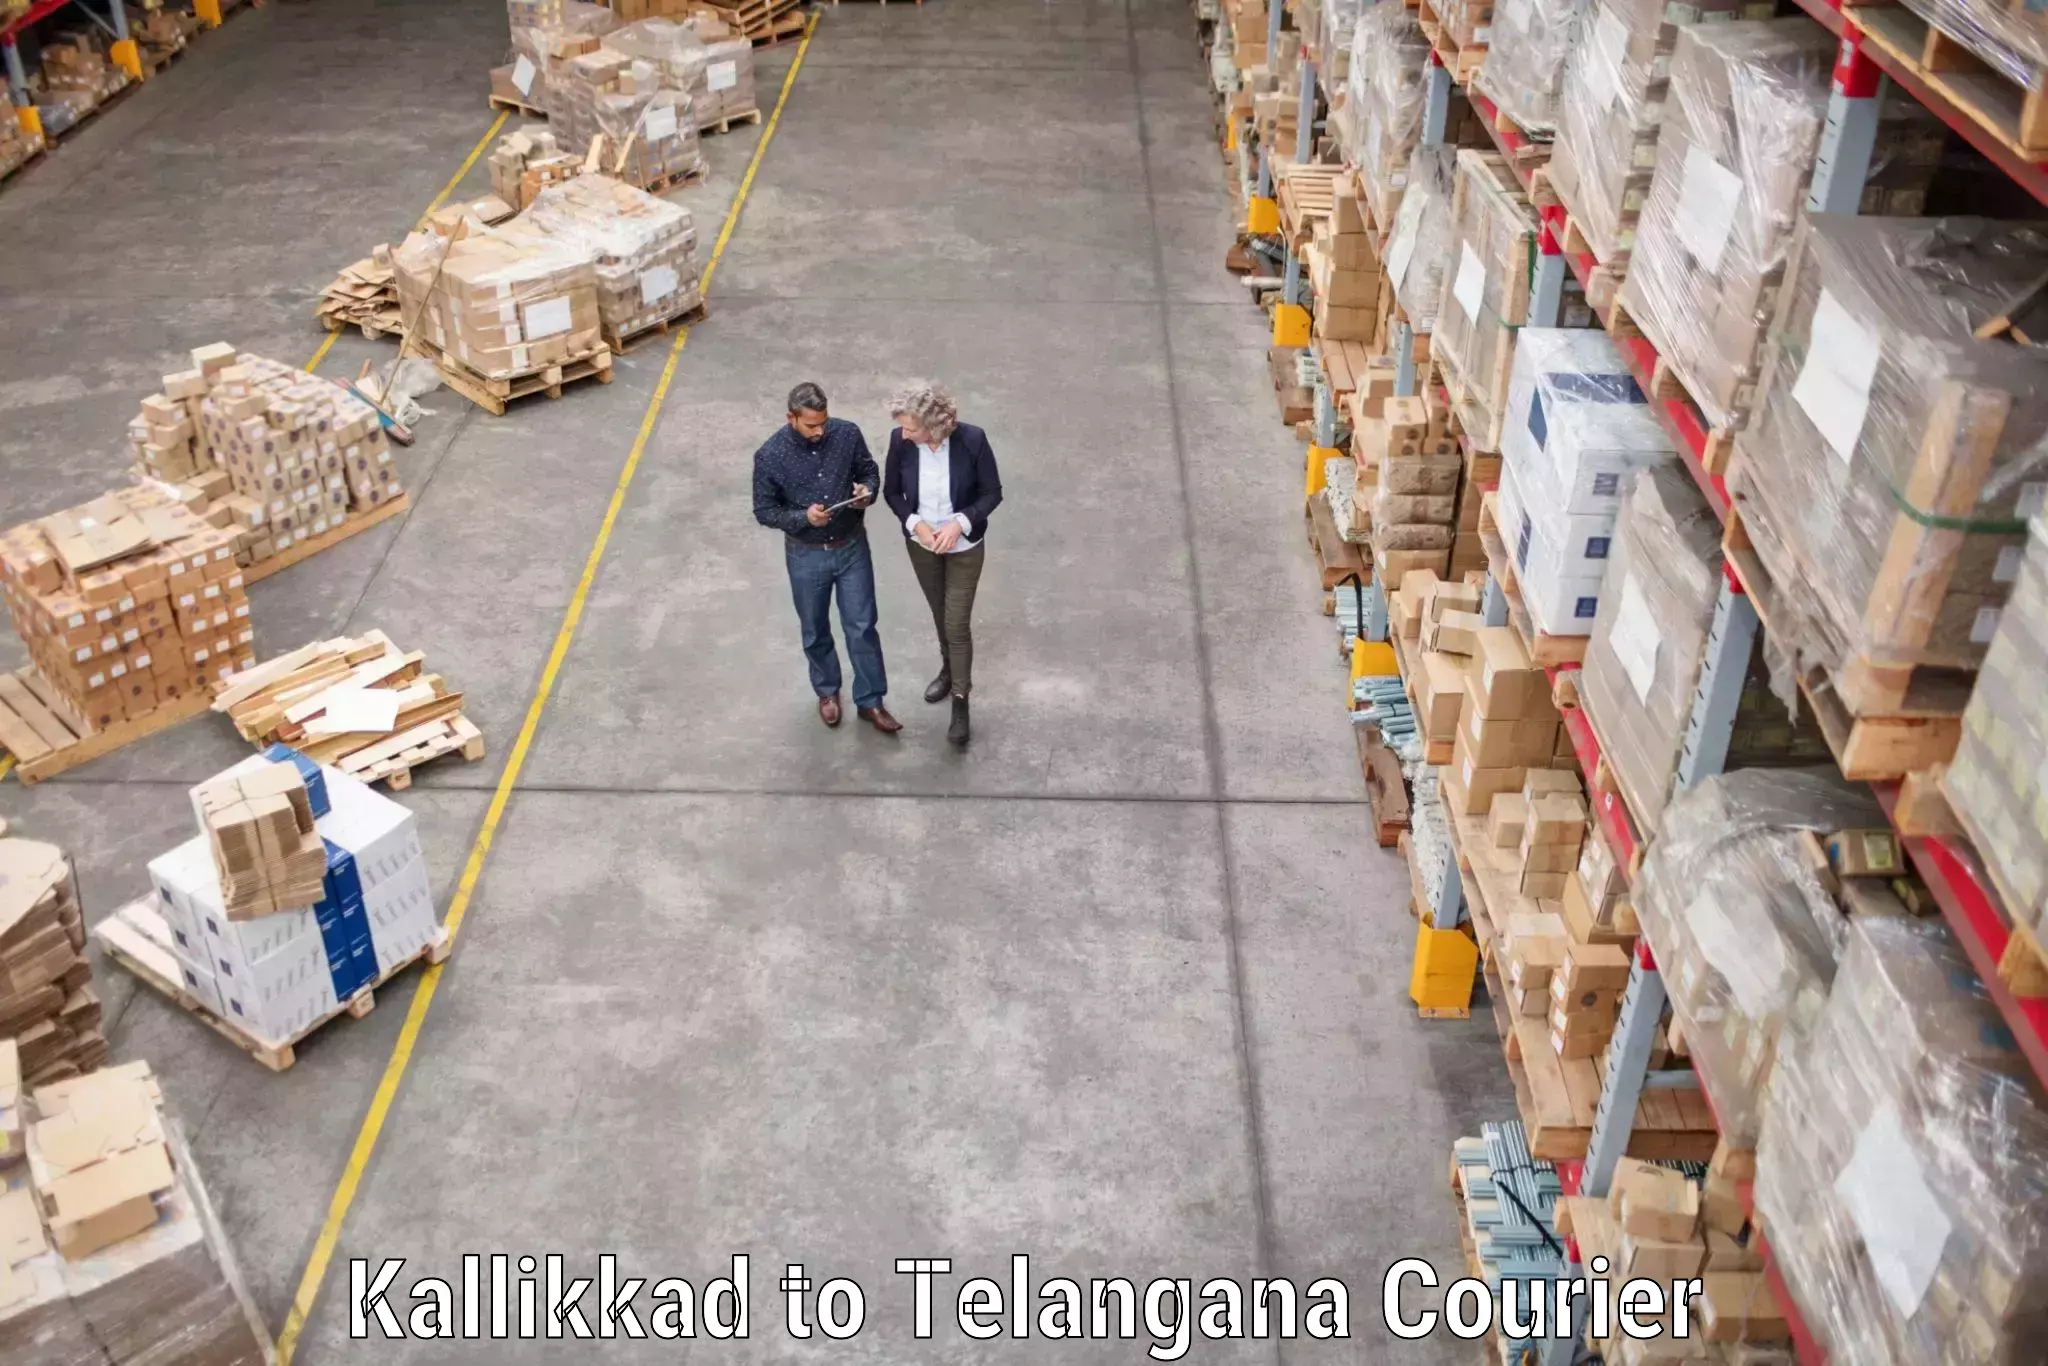 Specialized moving company Kallikkad to Jannaram